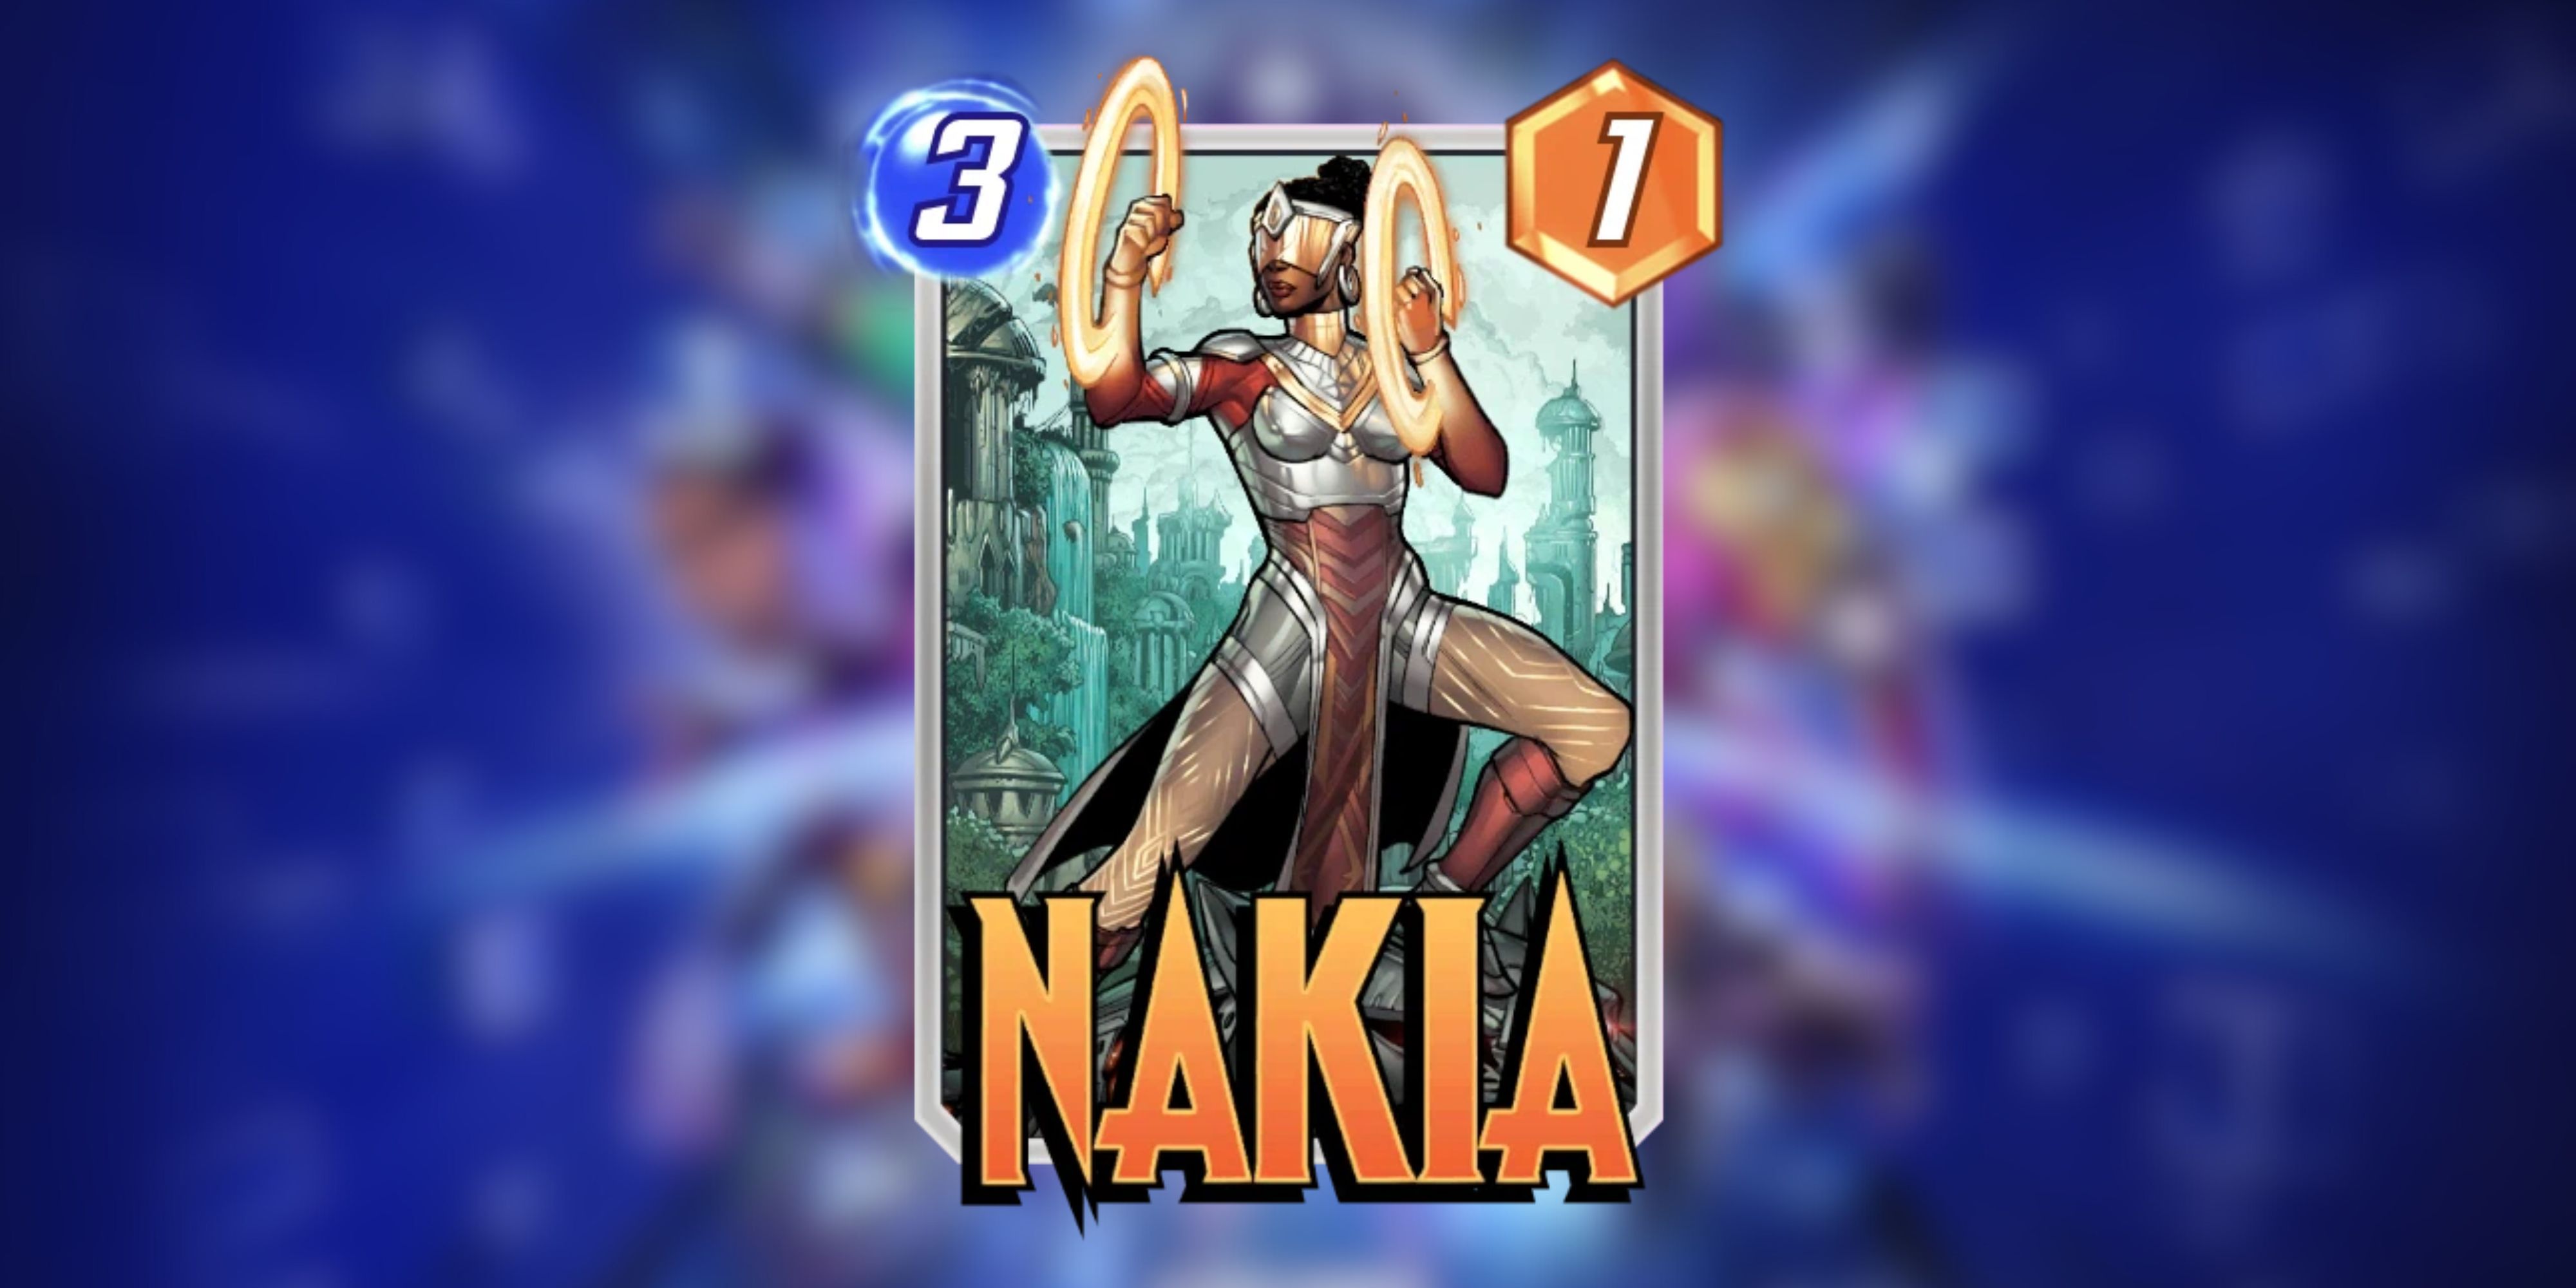 nakia’s card in marvel snap.